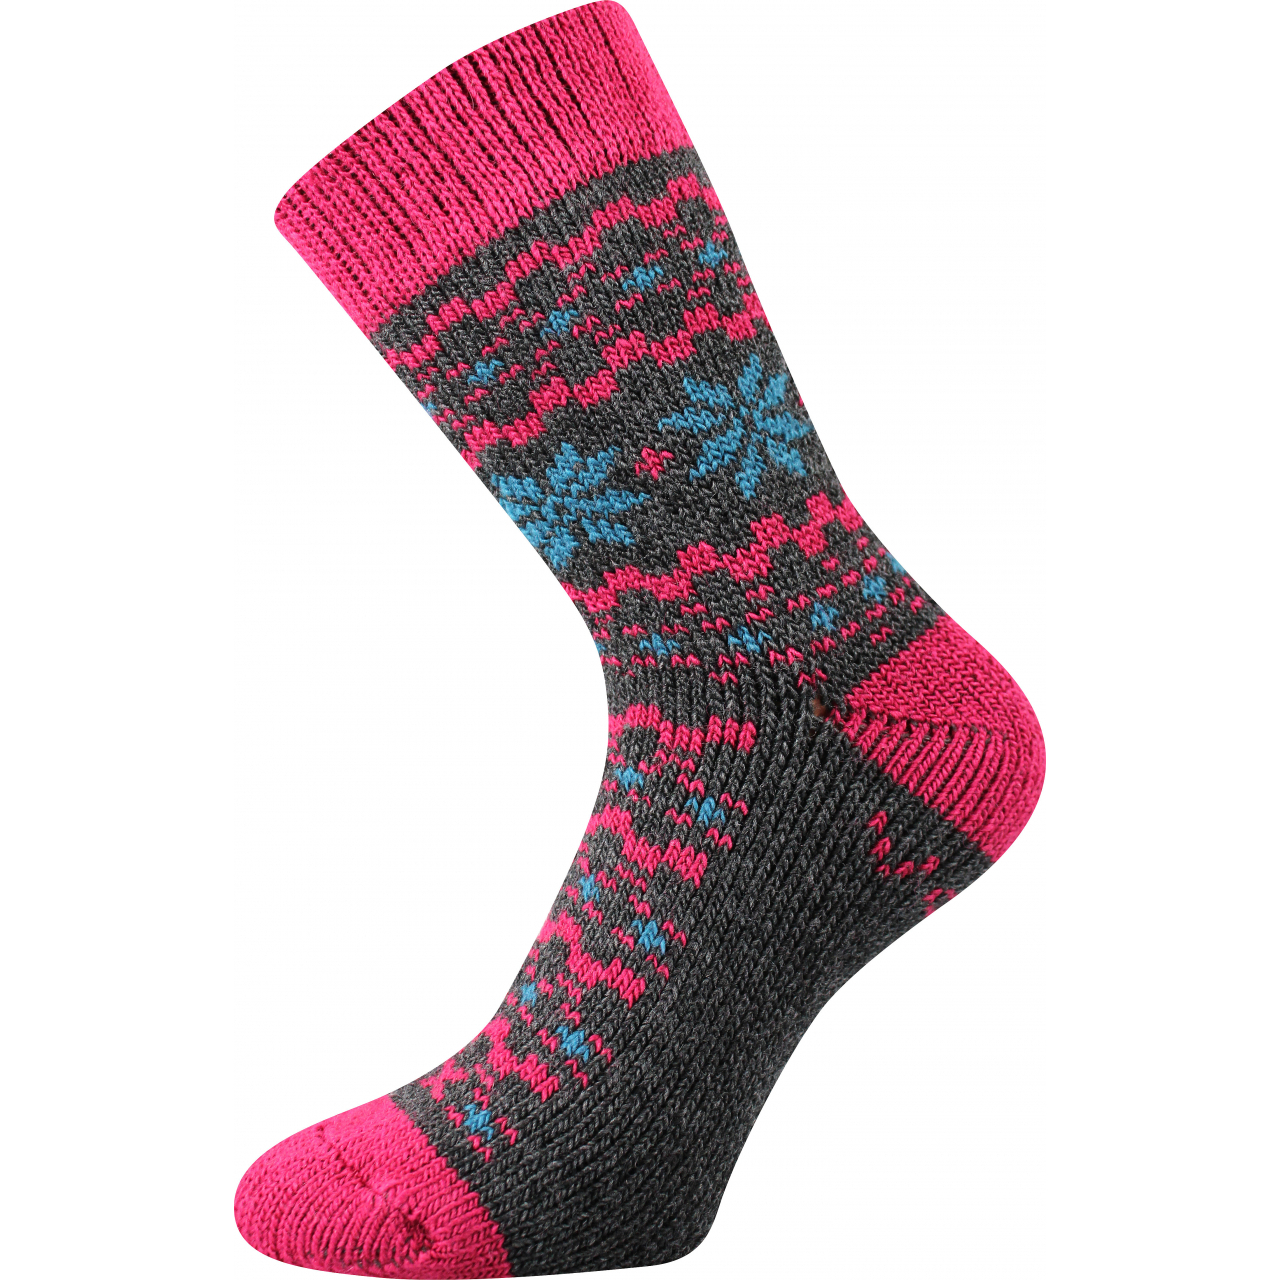 Ponožky unisex zimní Voxx Trondelag - šedé-růžové, 35-38